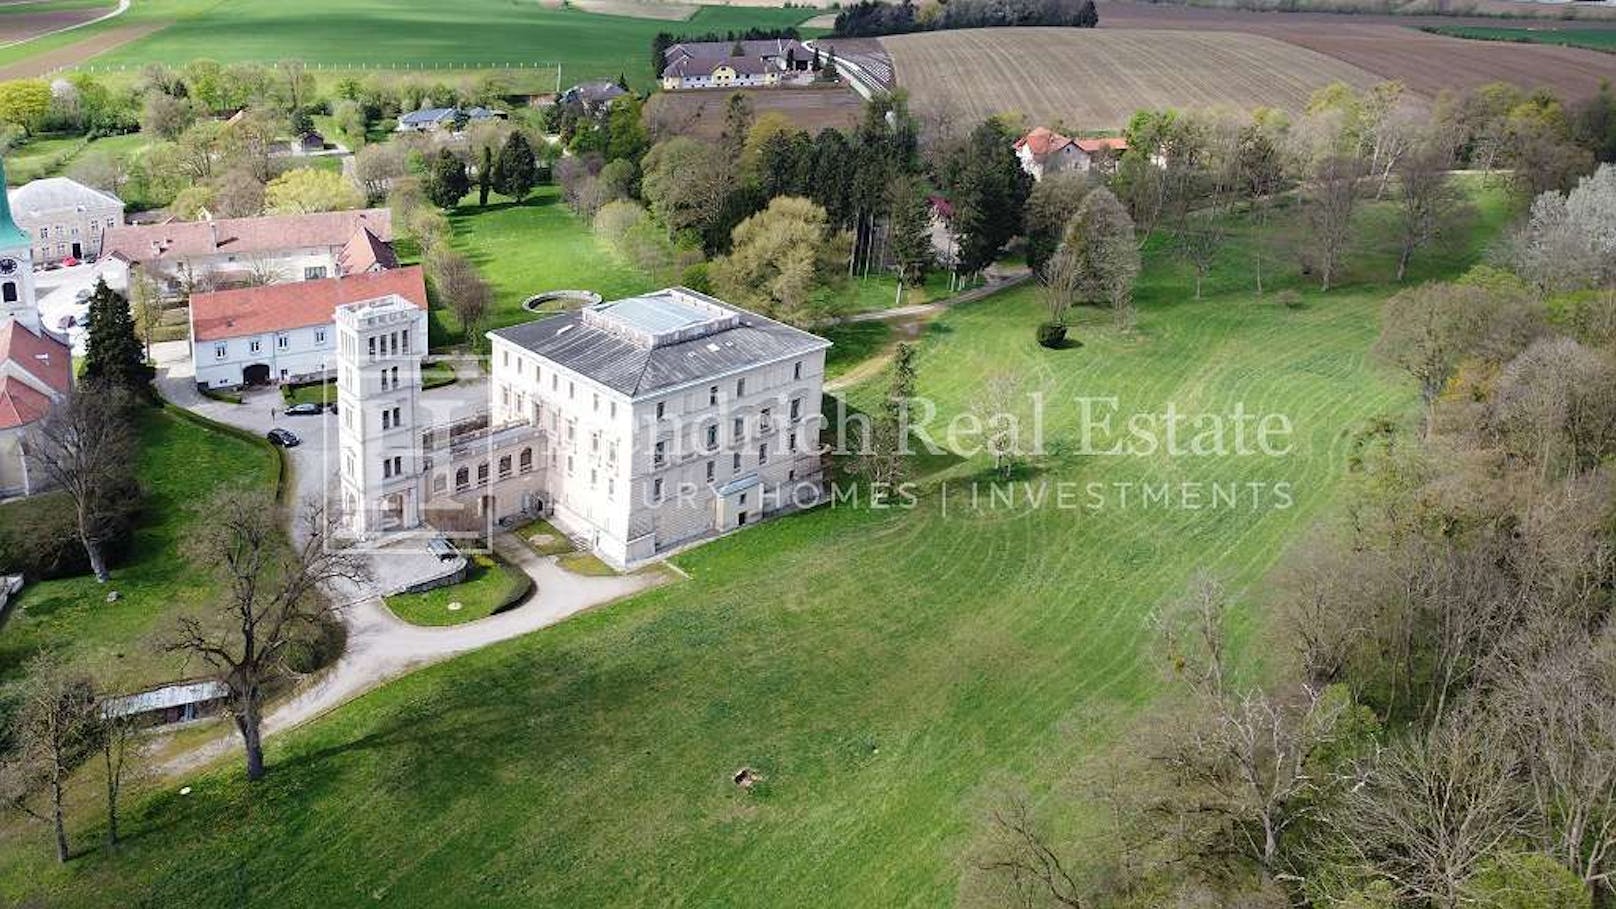 Eingebettet ist das Schloss Rappoltenkirchen in einen 22,8 Hektar großen englischen Landschaftspark, rund 35 Kilometer von Wien entfernt.